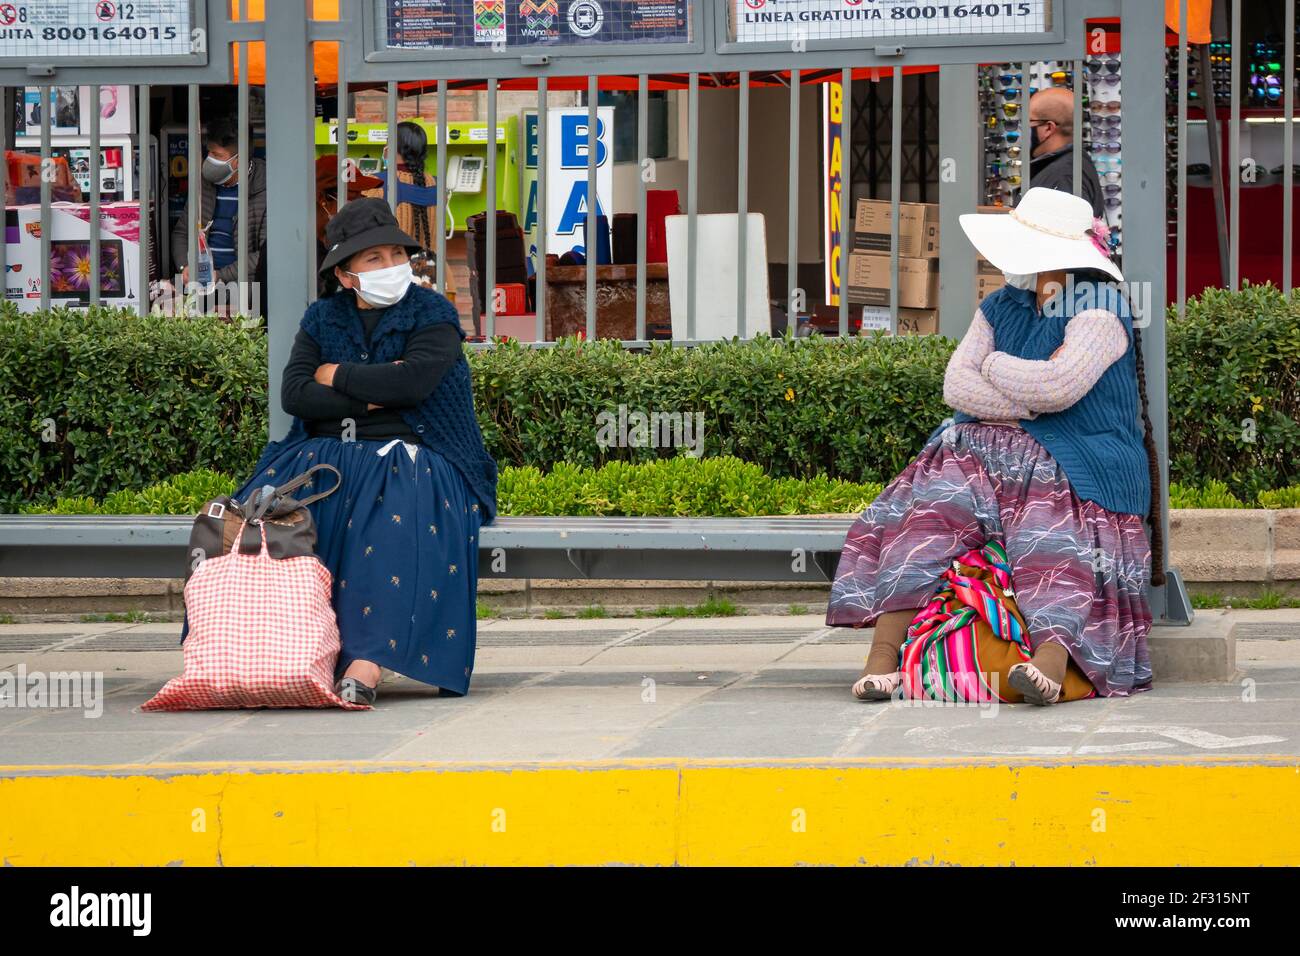 El Alto, la Paz, Bolivia - Febbraio 11 2021: Le donne indigene boliviane conosciute come 'Cholitas', sedendosi su un banco un metro di distanza l'una dall'altra mentre noi Foto Stock